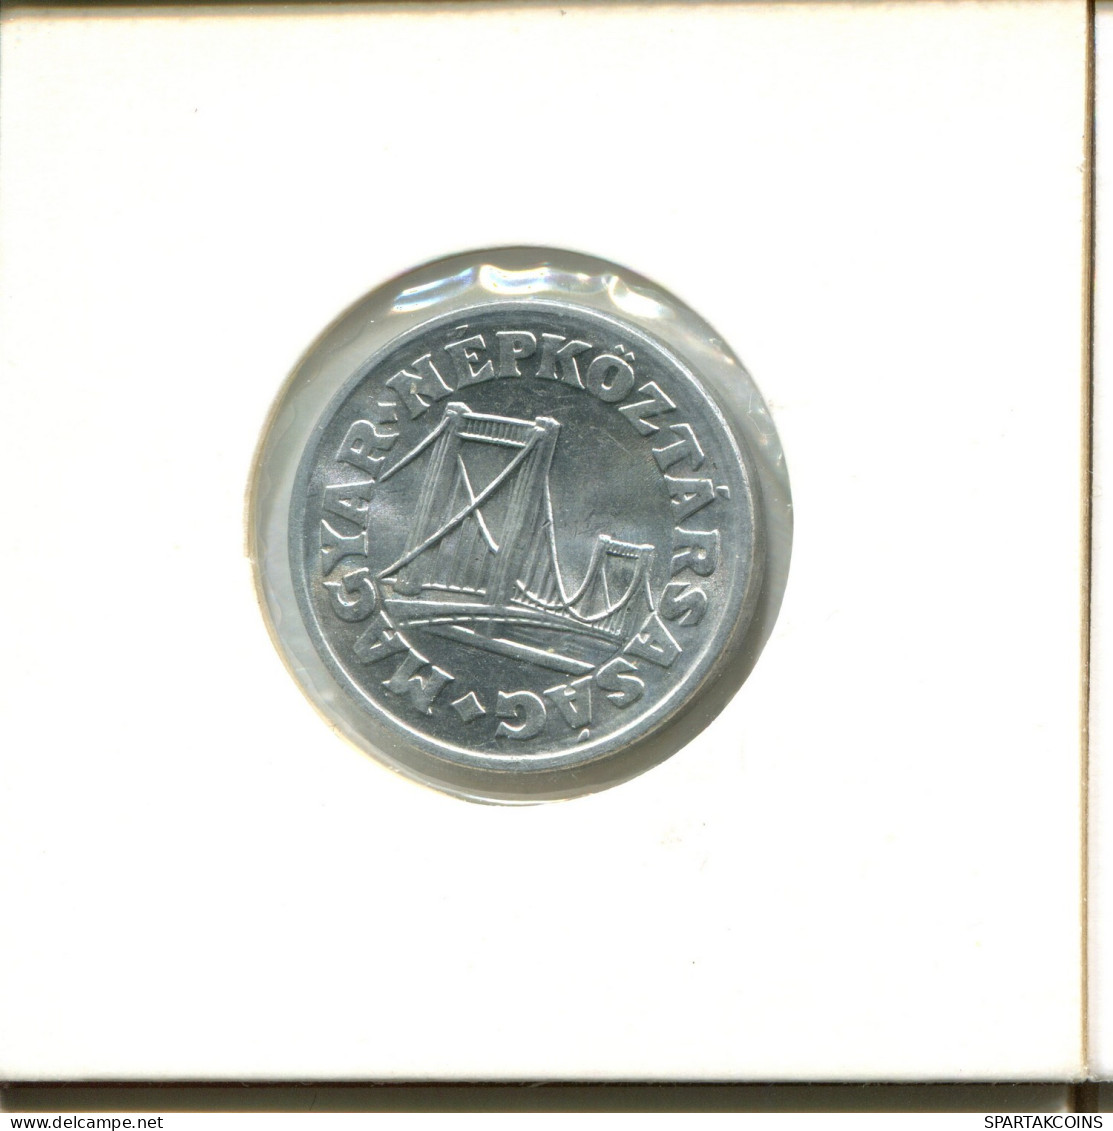 50 FILLER 1982 HUNGARY Coin #AY230.2.U.A - Hungary